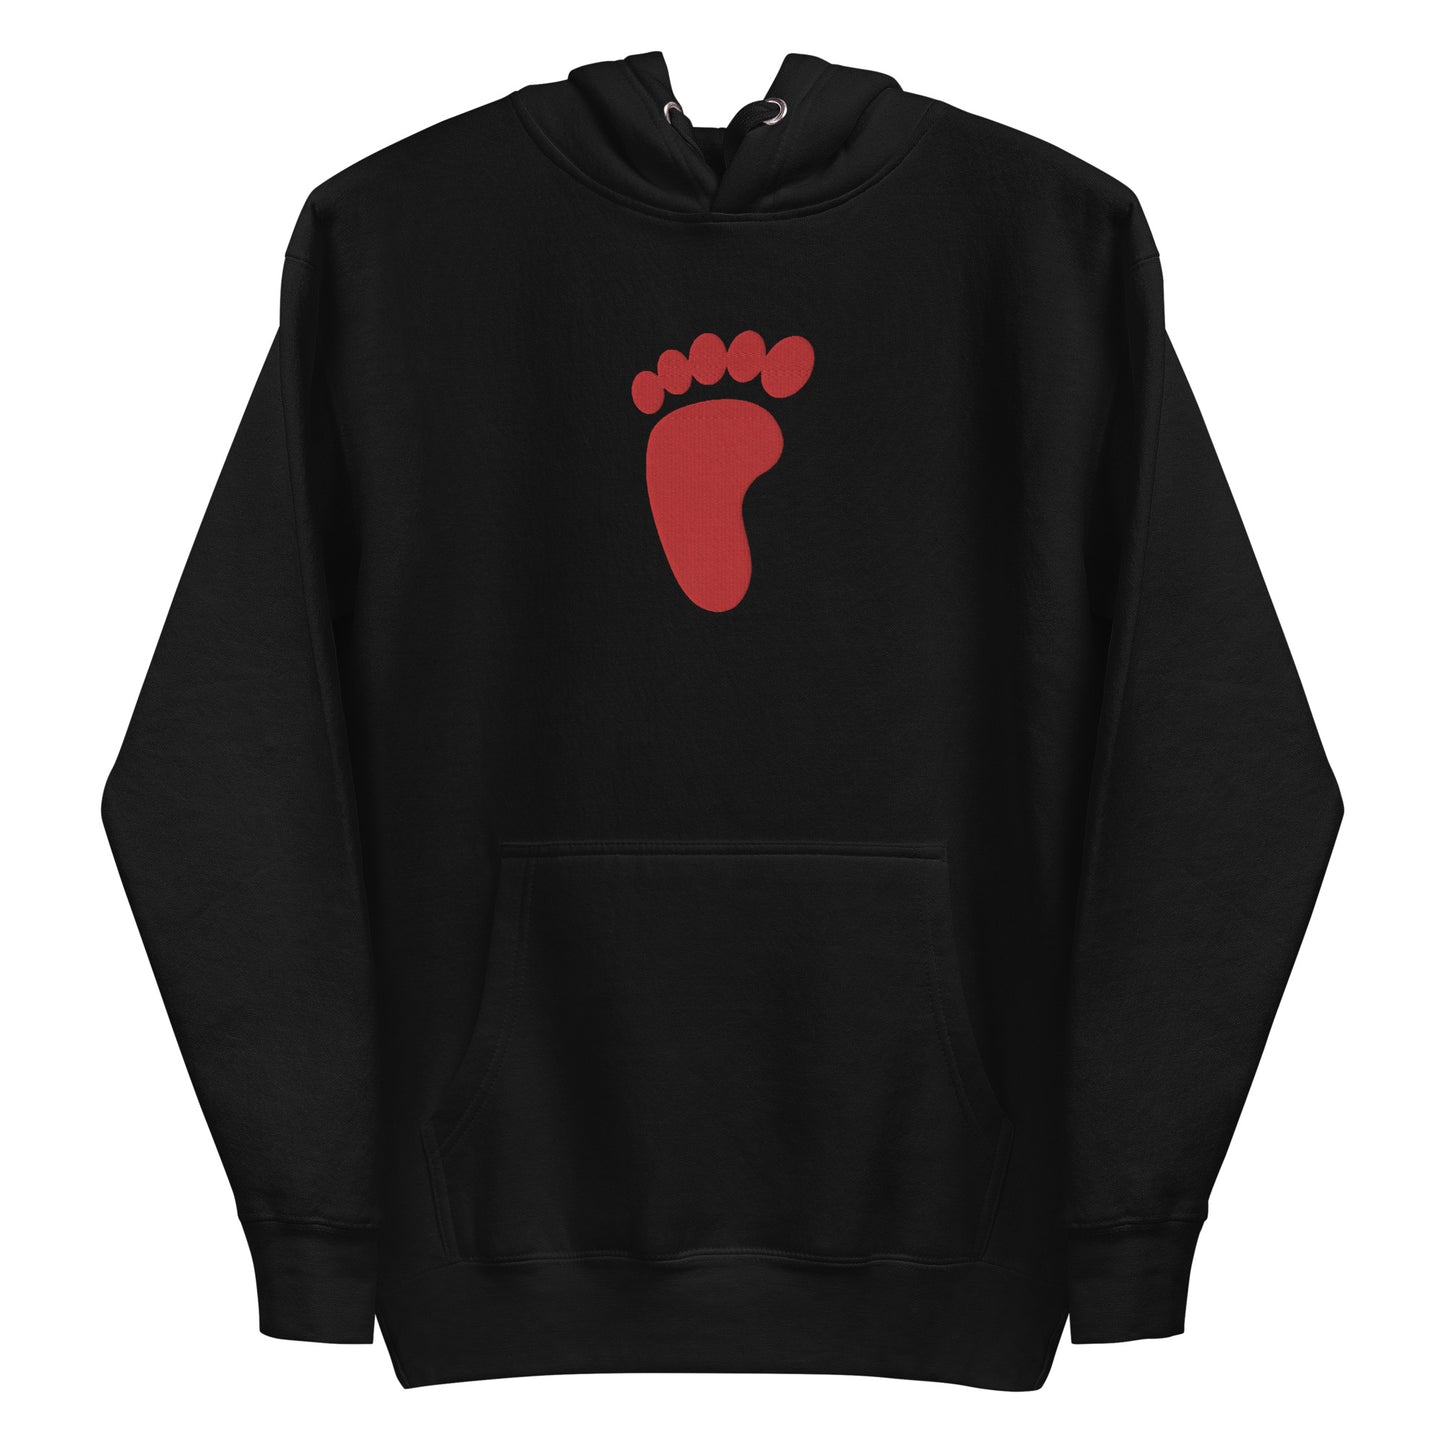 Foot Member embroidered hoodie